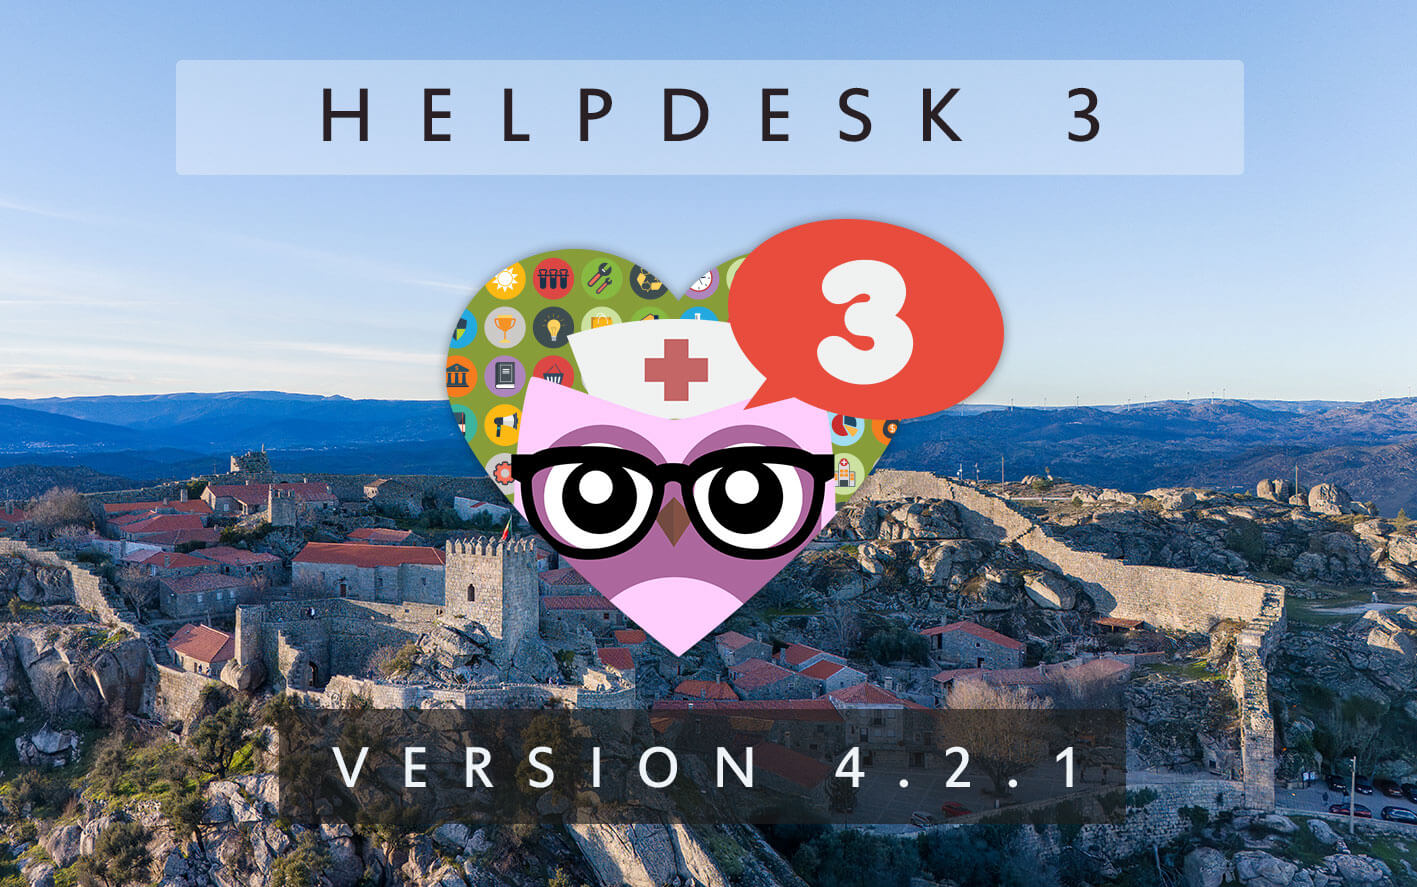 HelpDesk 3 - Version 4.2.1